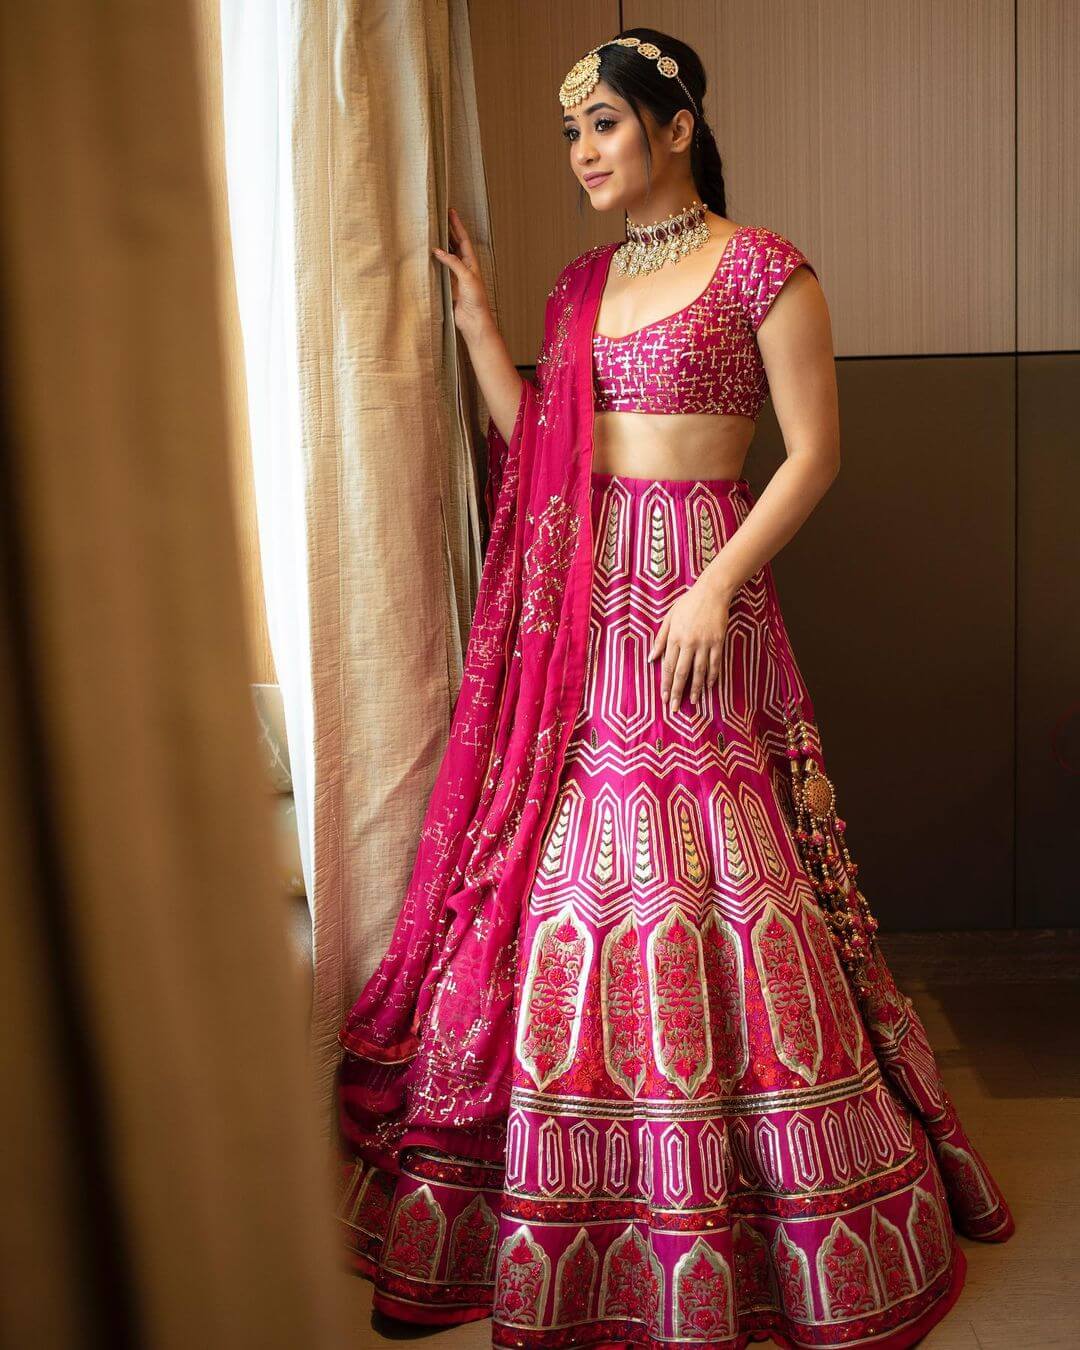 Shivangi Joshi Look Pretty In Gorgeous Pink Lehenga Outfit With Matta Patti Shivangi Joshi Stylish And Traditional Outfit